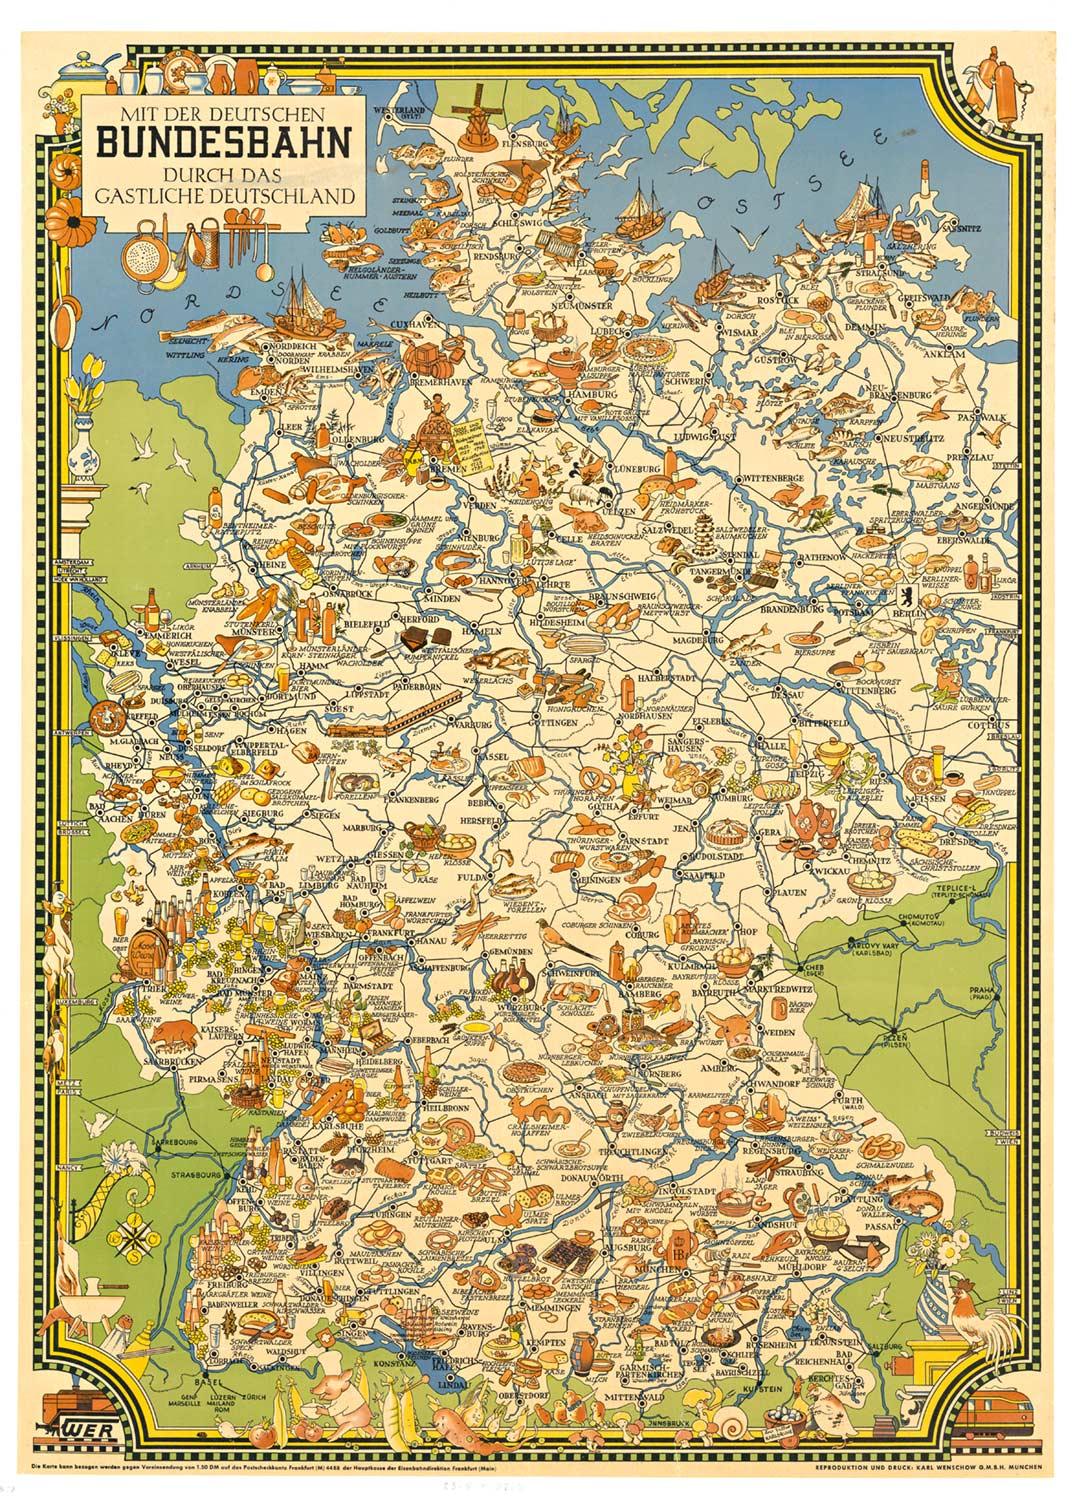 Leo Faller Figurative Print - Original 'Bundesbahn durch das Gastliches Deutschland' vintage poster